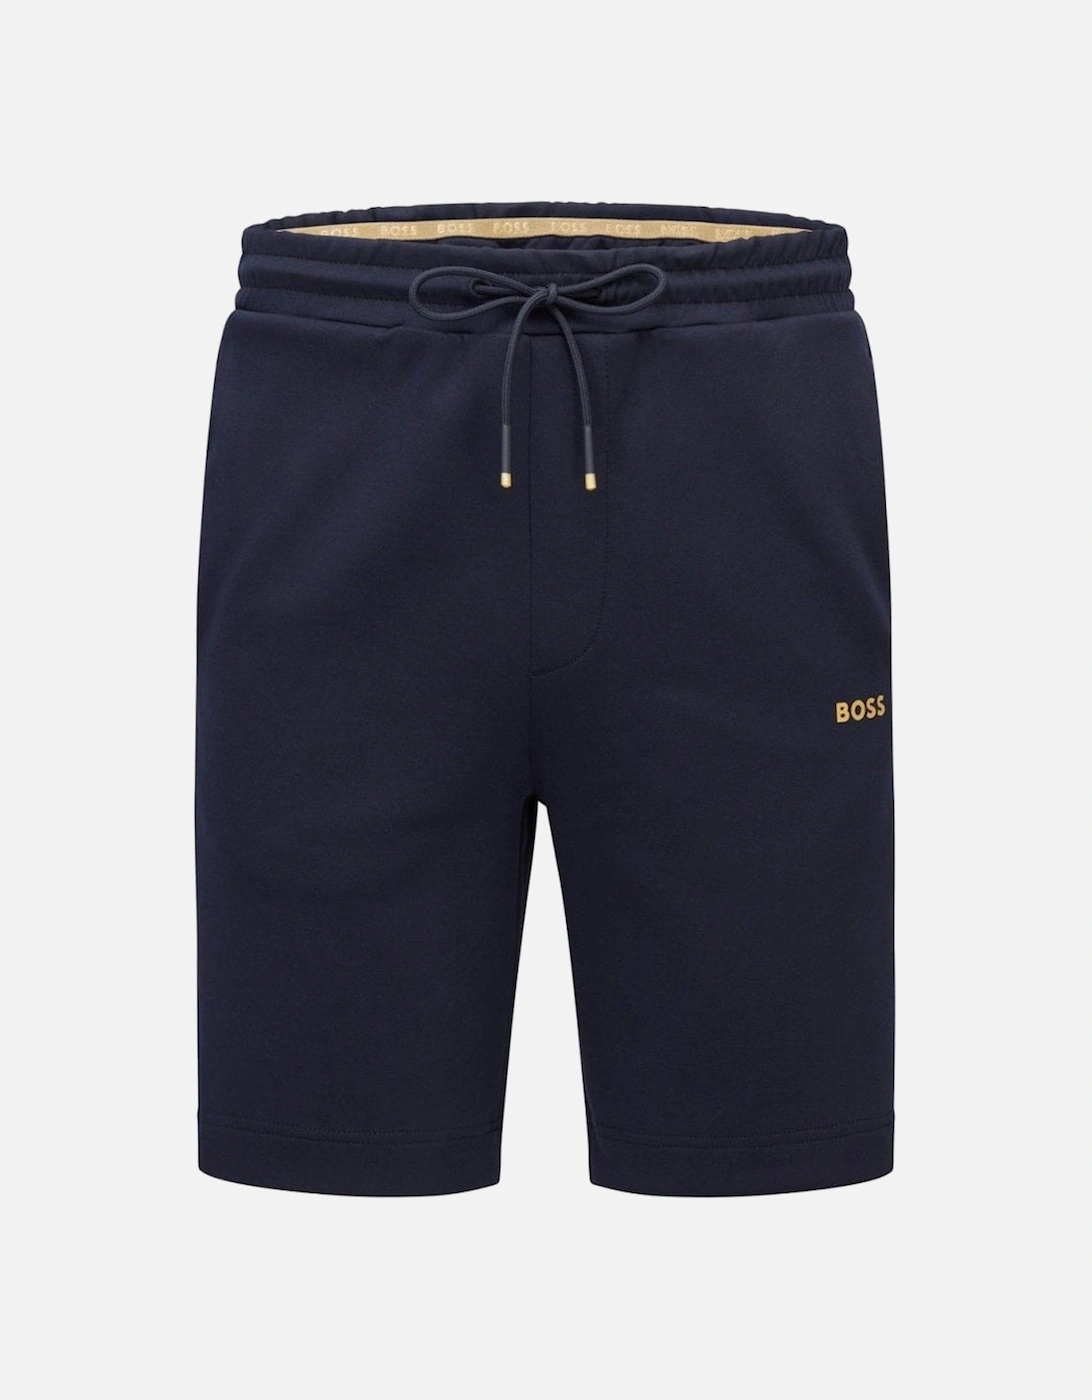 Headlo Navy/ Gold Shorts., 3 of 2